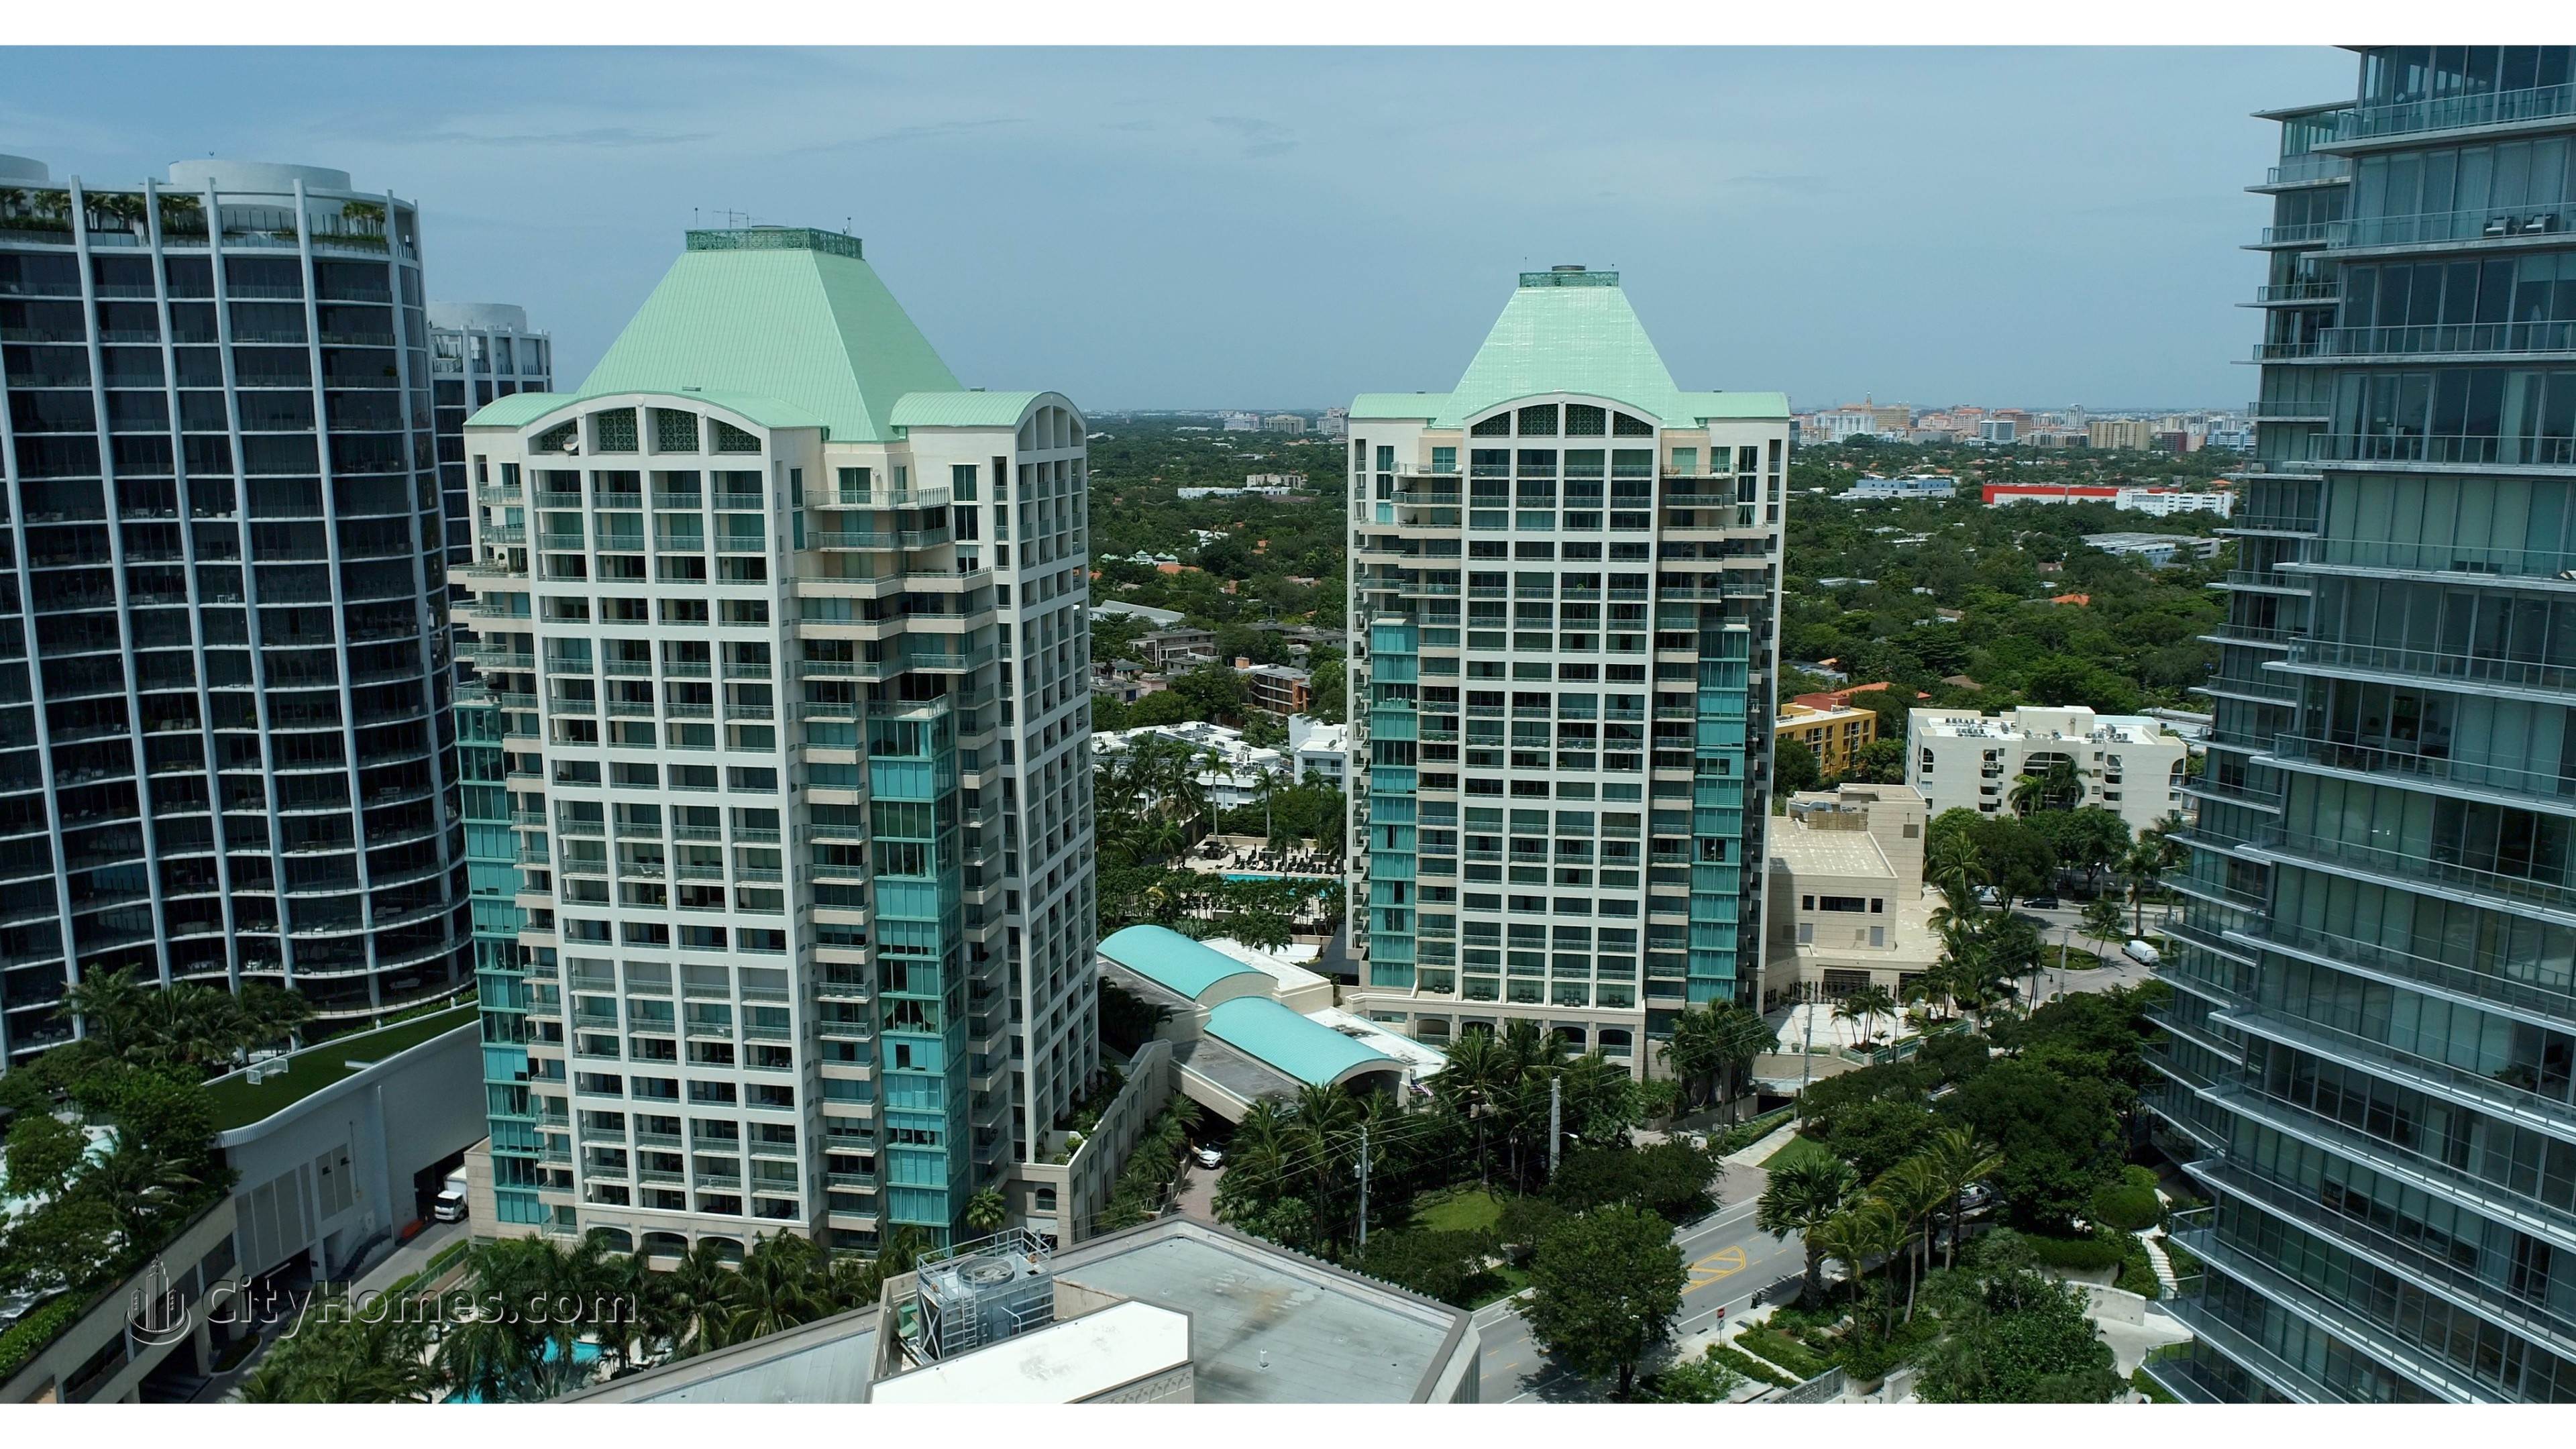 Ritz-Carlton Coconut Grove building at 3300 And 3350 SW 27th Avenue, Miami, FL 33133